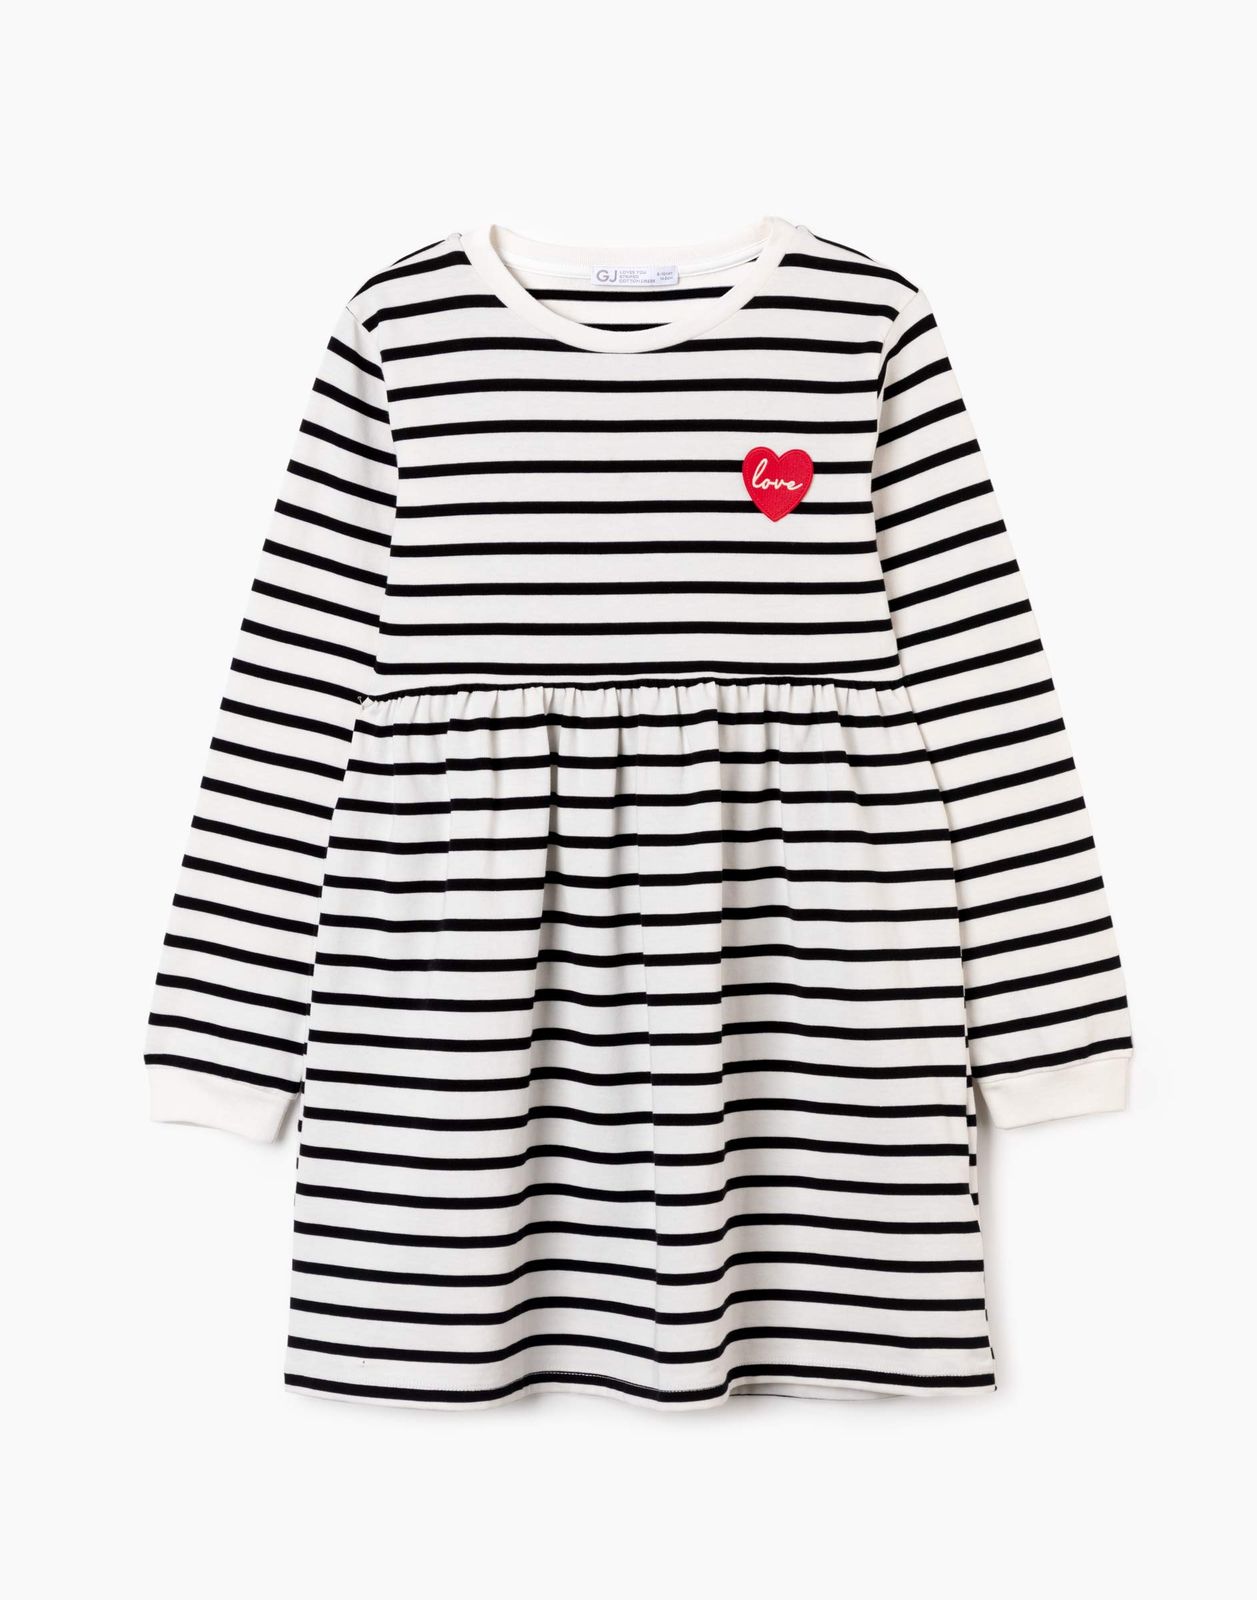 Платье детское Gloria Jeans GDR027486, молочный/черный, 134 темно синяя шапка с вертикальными полосками catya детское